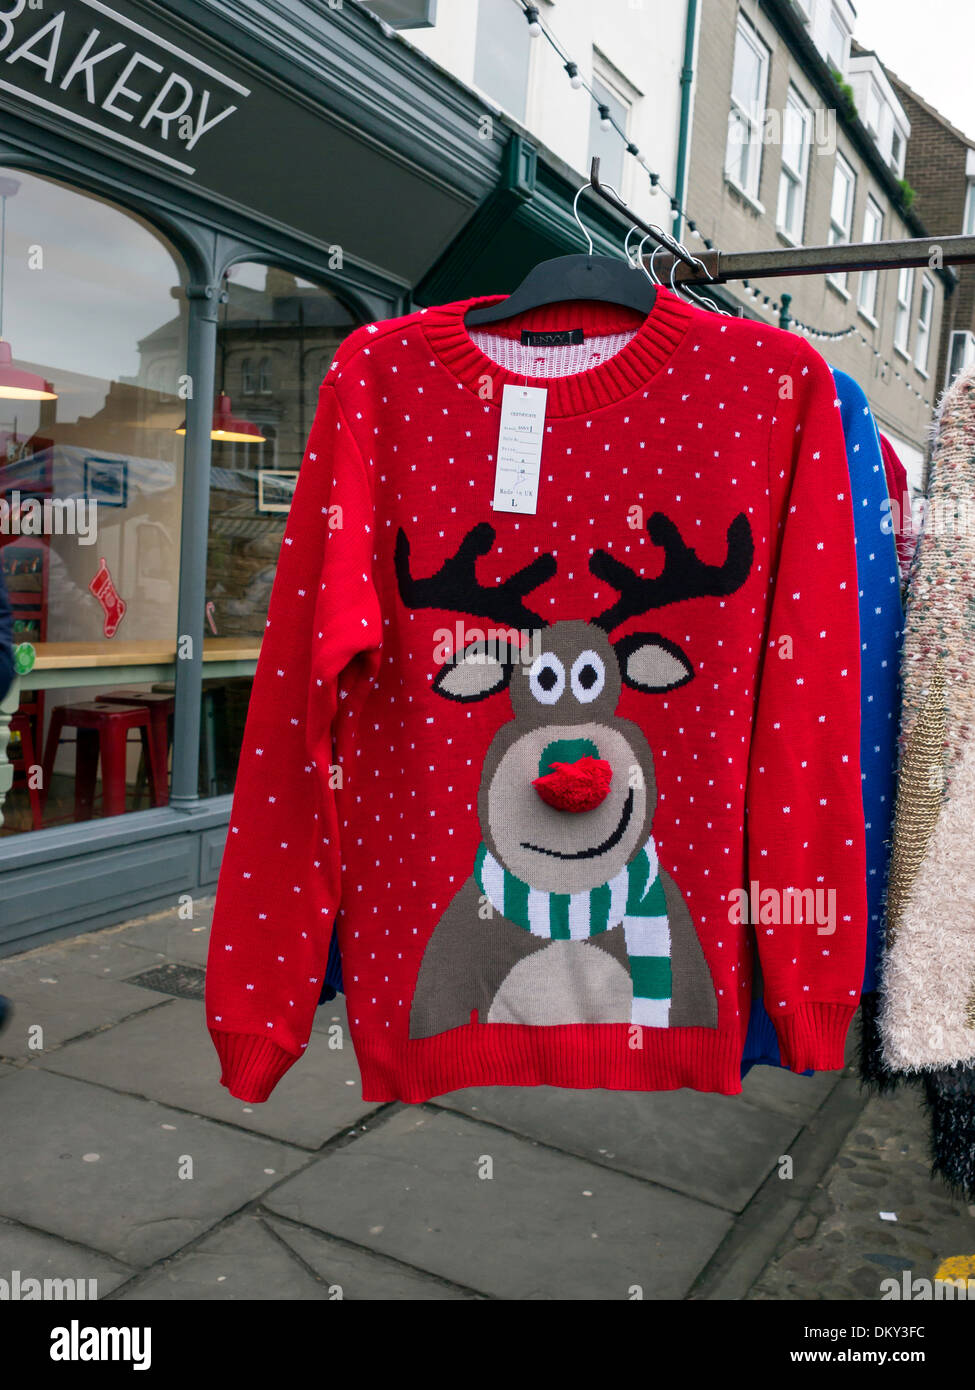 Stand vente nouveauté Noël tricoté avec cavalier rouge smiling Rudolph the Red Nosed Reindeer pattern Banque D'Images